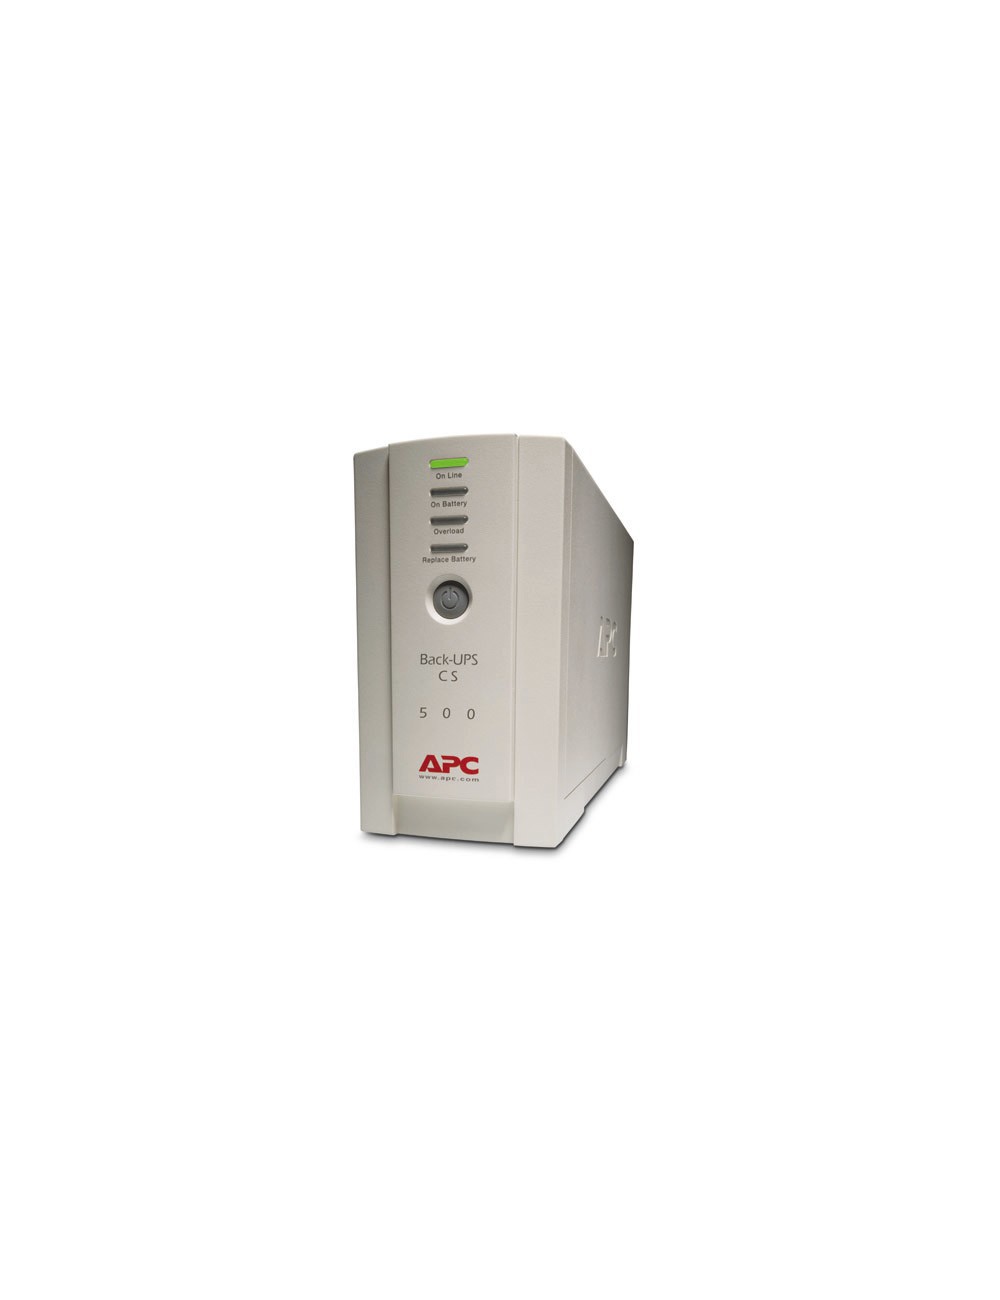 APC Back-UPS sistema de alimentación ininterrumpida (UPS) En espera (Fuera de línea) o Standby (Offline) 0,5 kVA 300 W 4